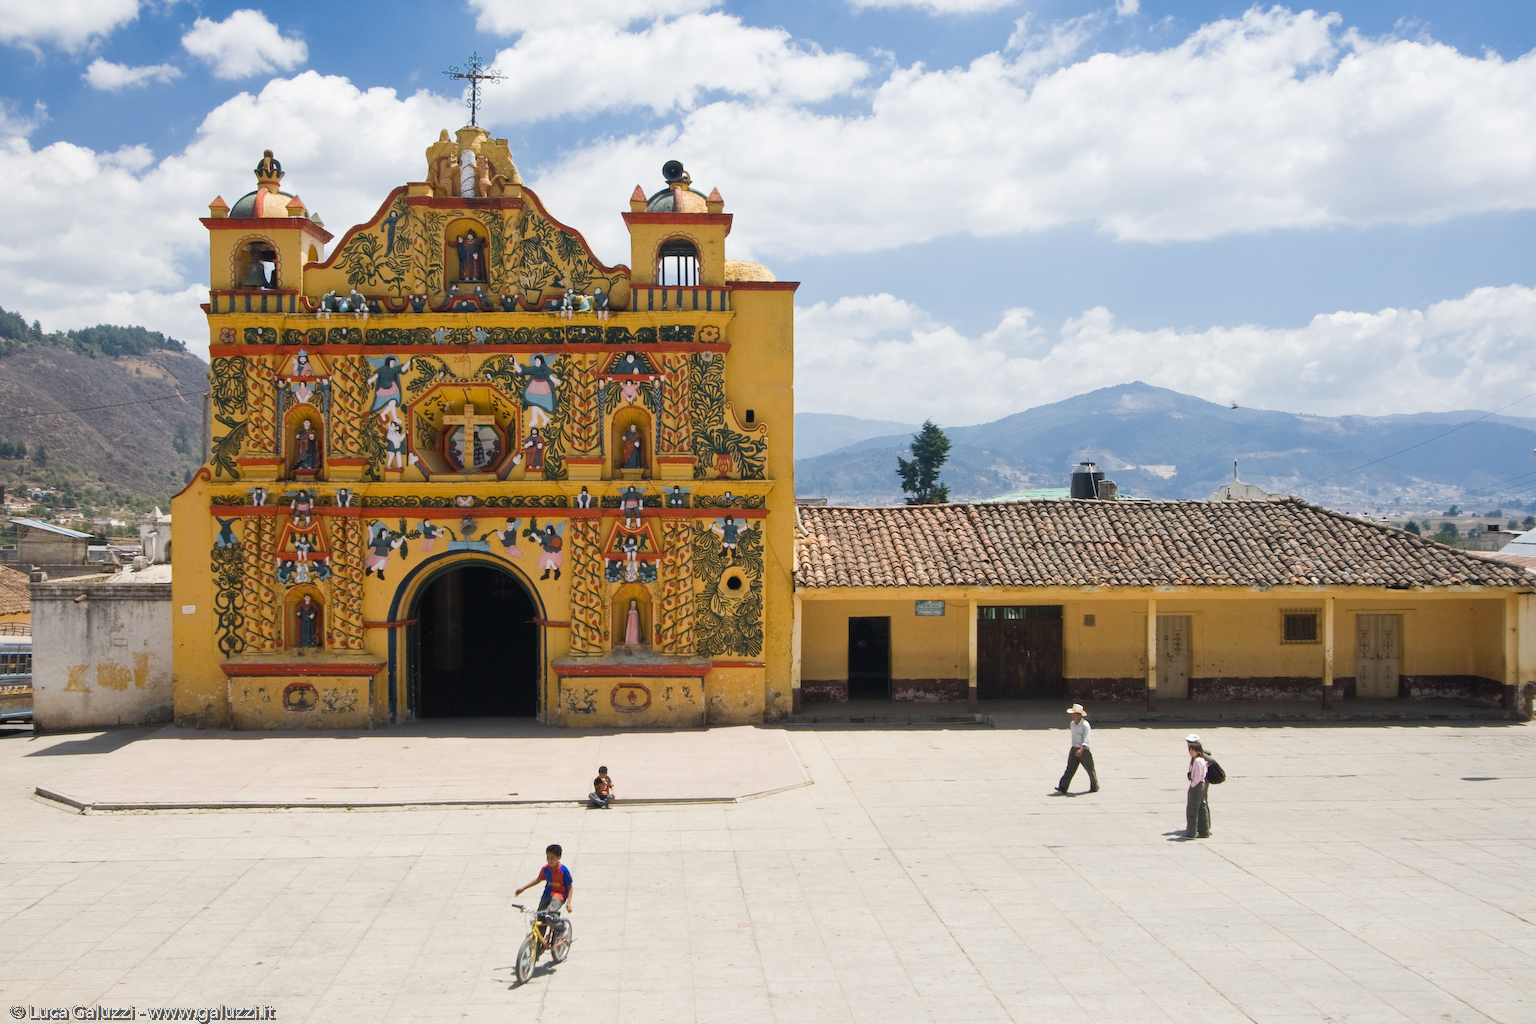 San Andrés Xecul ha una chiesa molto originale: santi e angeli a colori sgargianti insieme a tigri e scimmie adornano la facciata